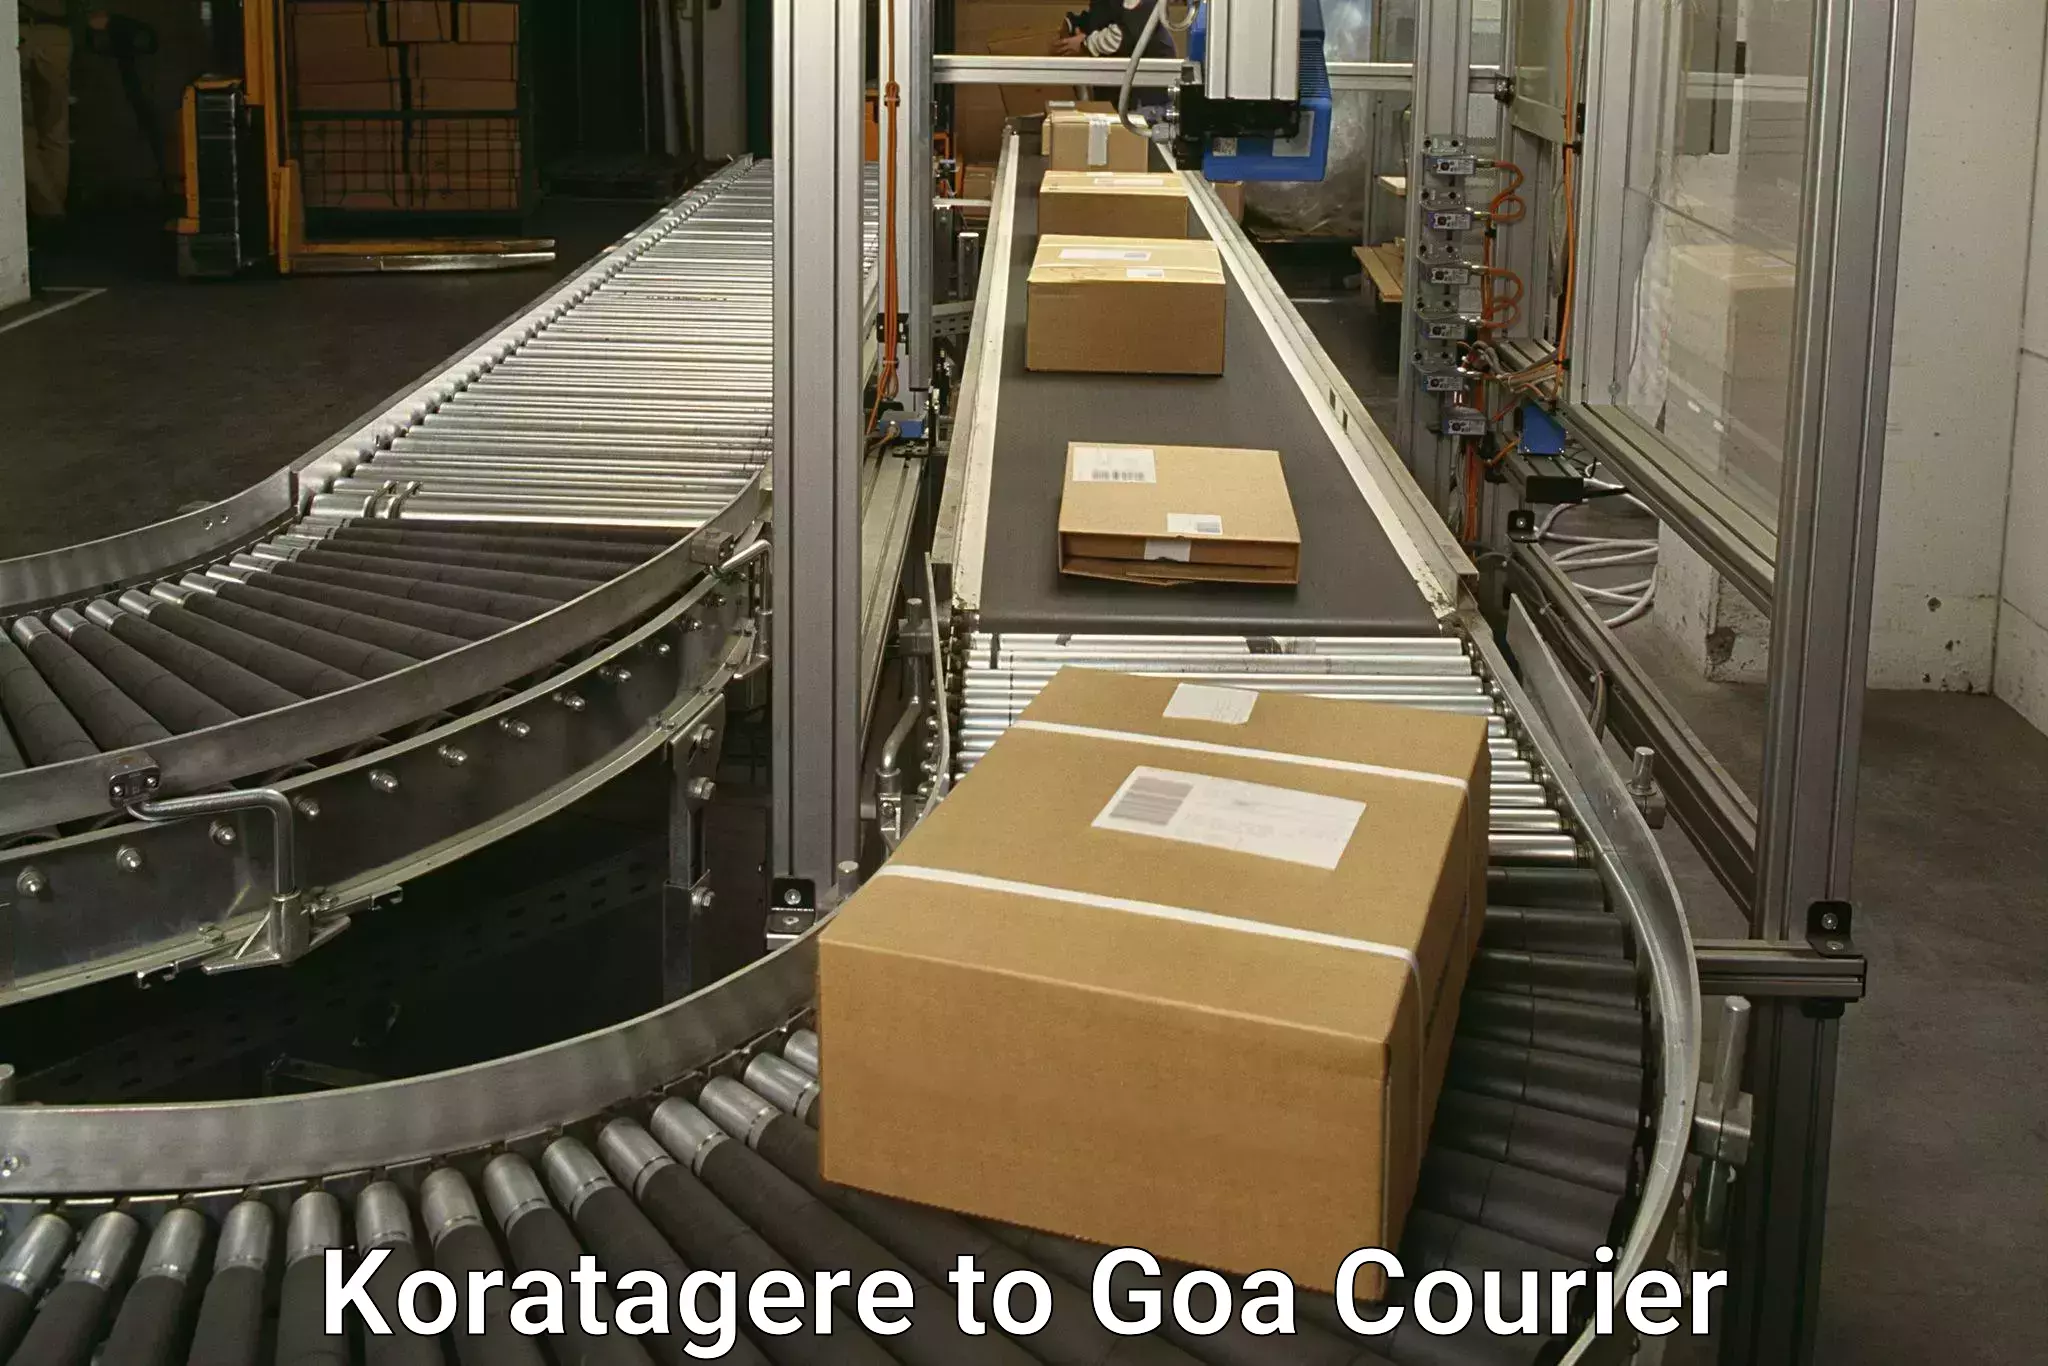 Premium courier services Koratagere to Goa